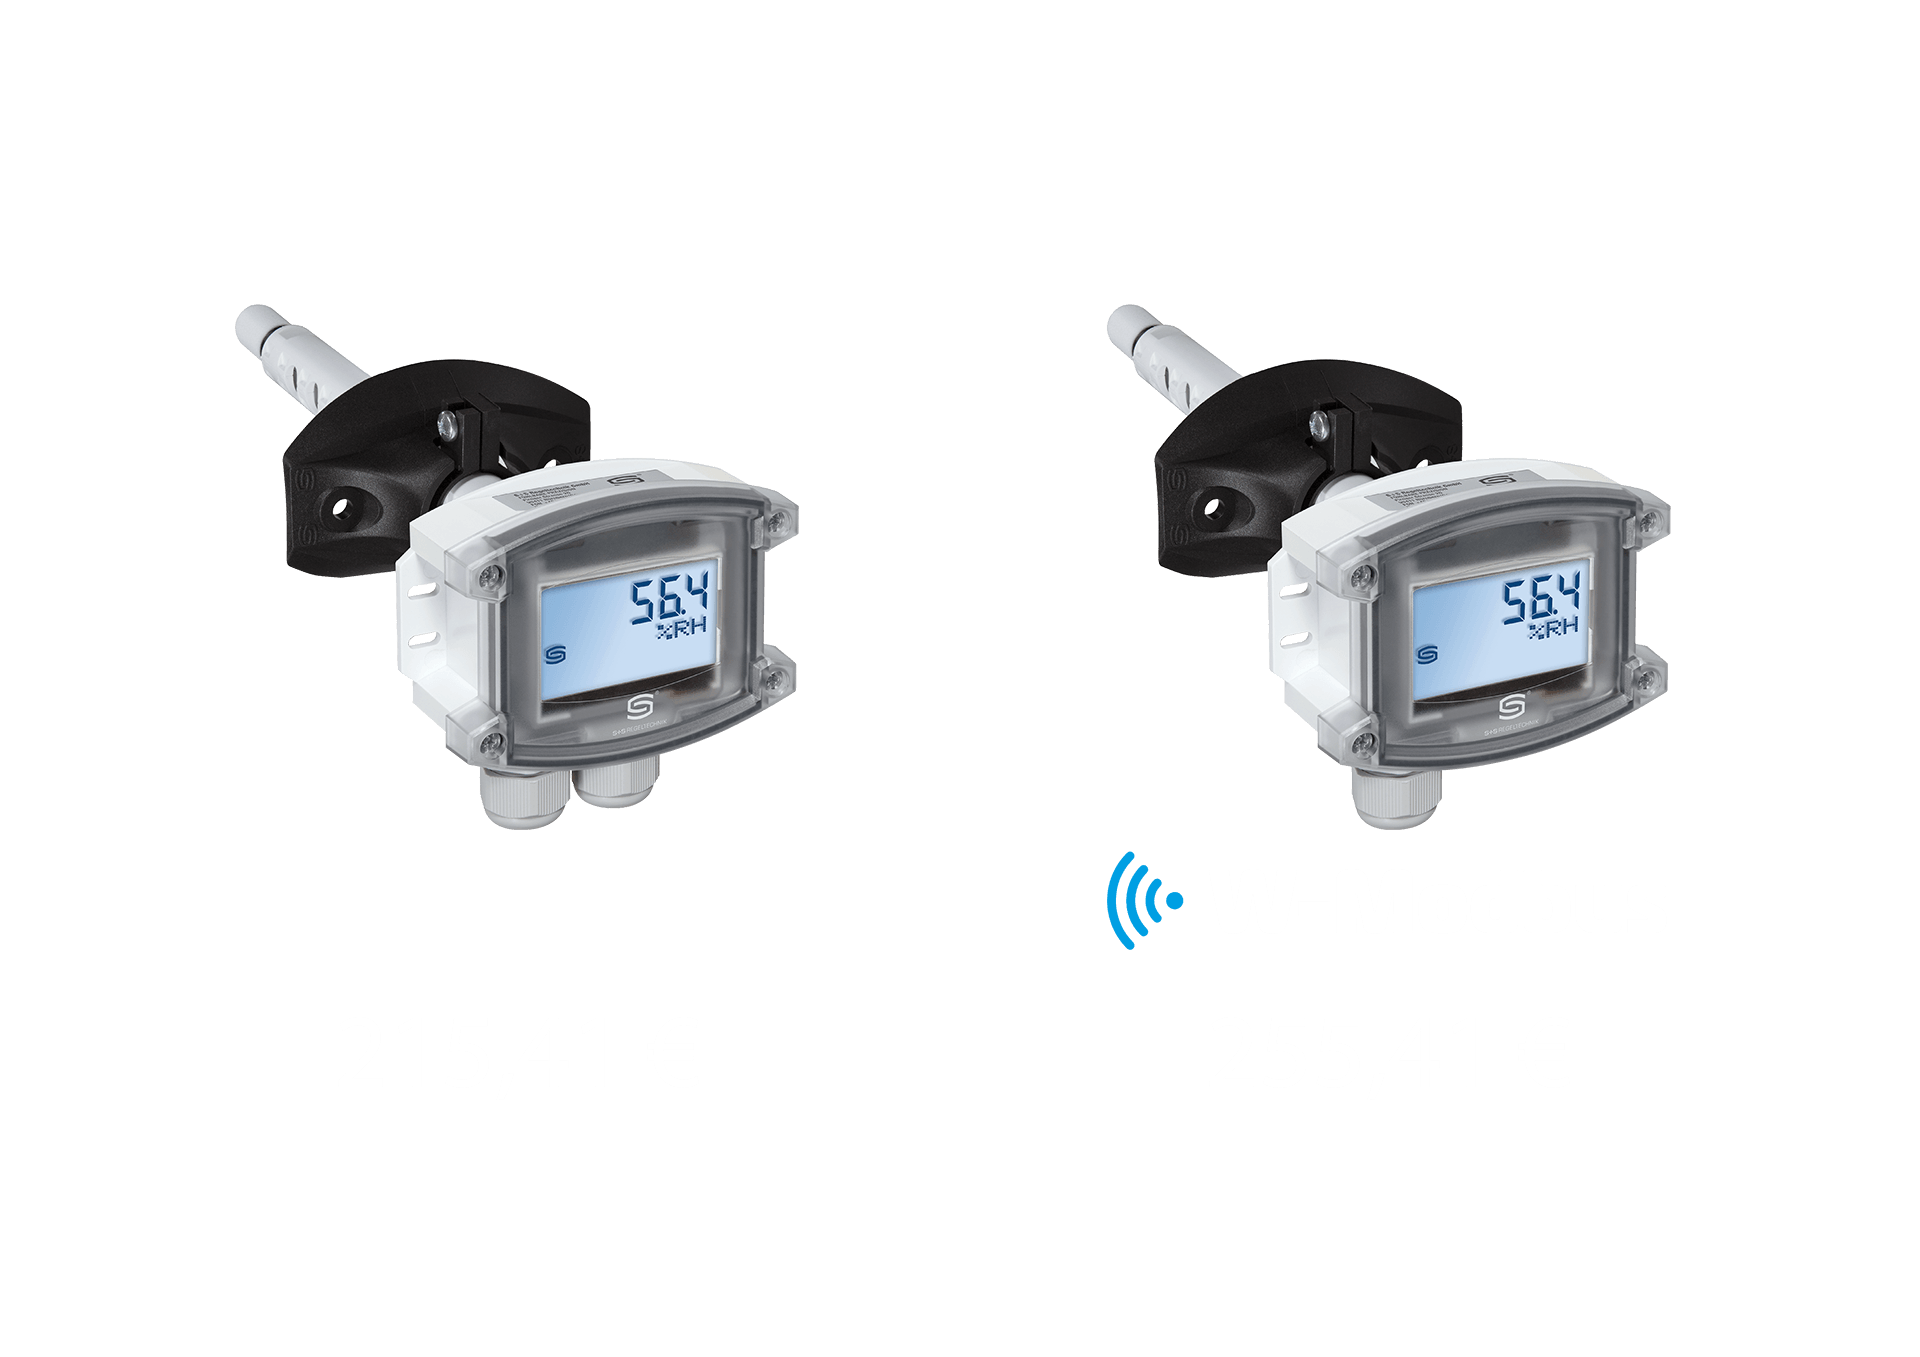 Outdoor temperature sensor with W-Modbus Price comparison